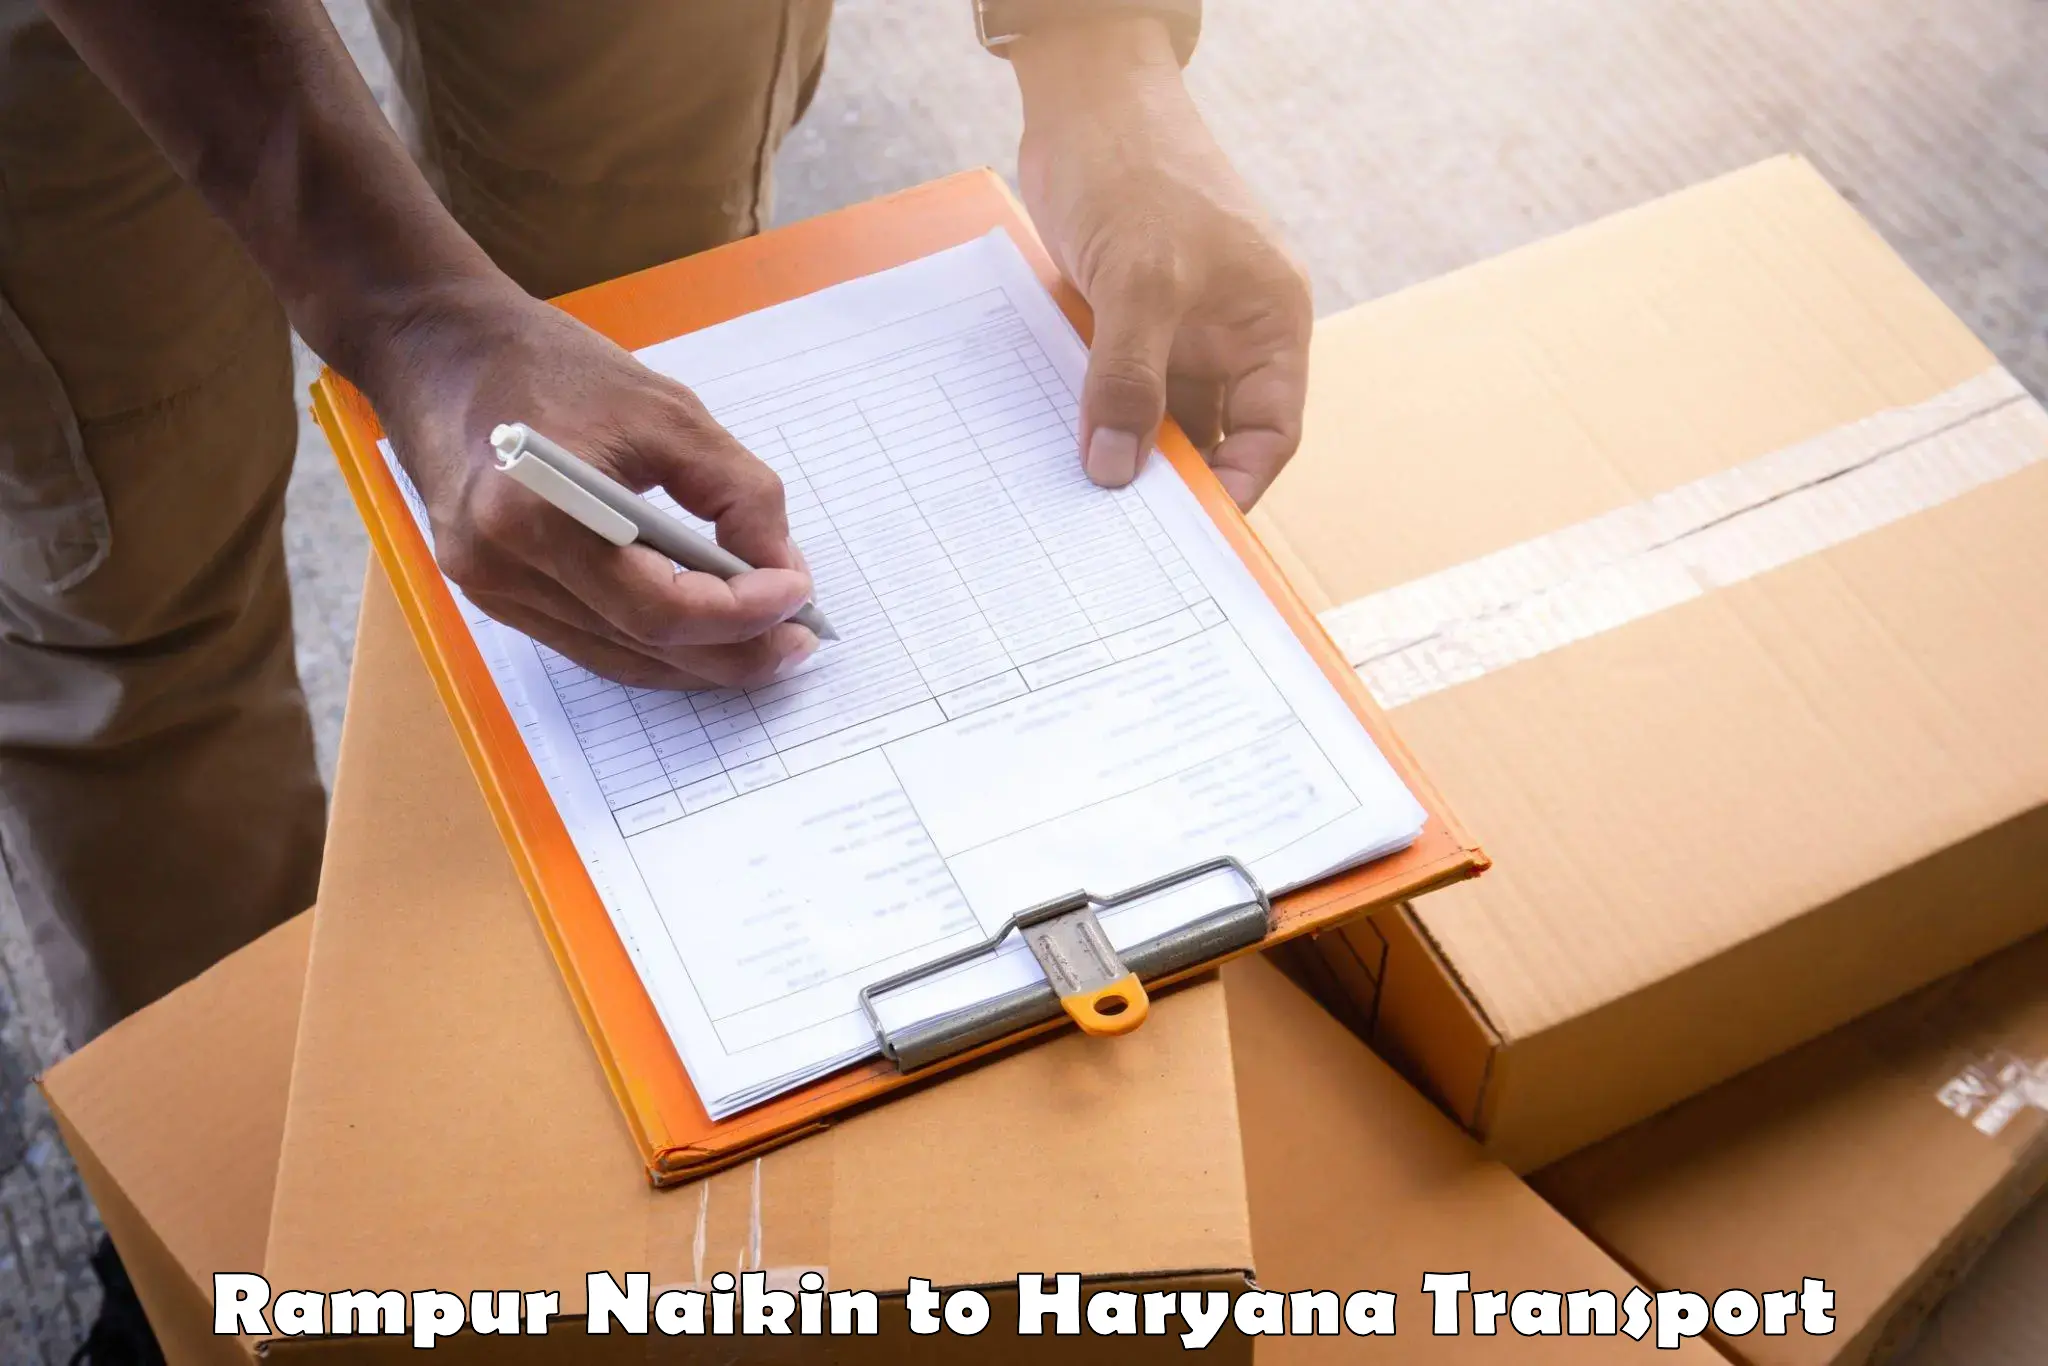 Logistics transportation services Rampur Naikin to Odhan